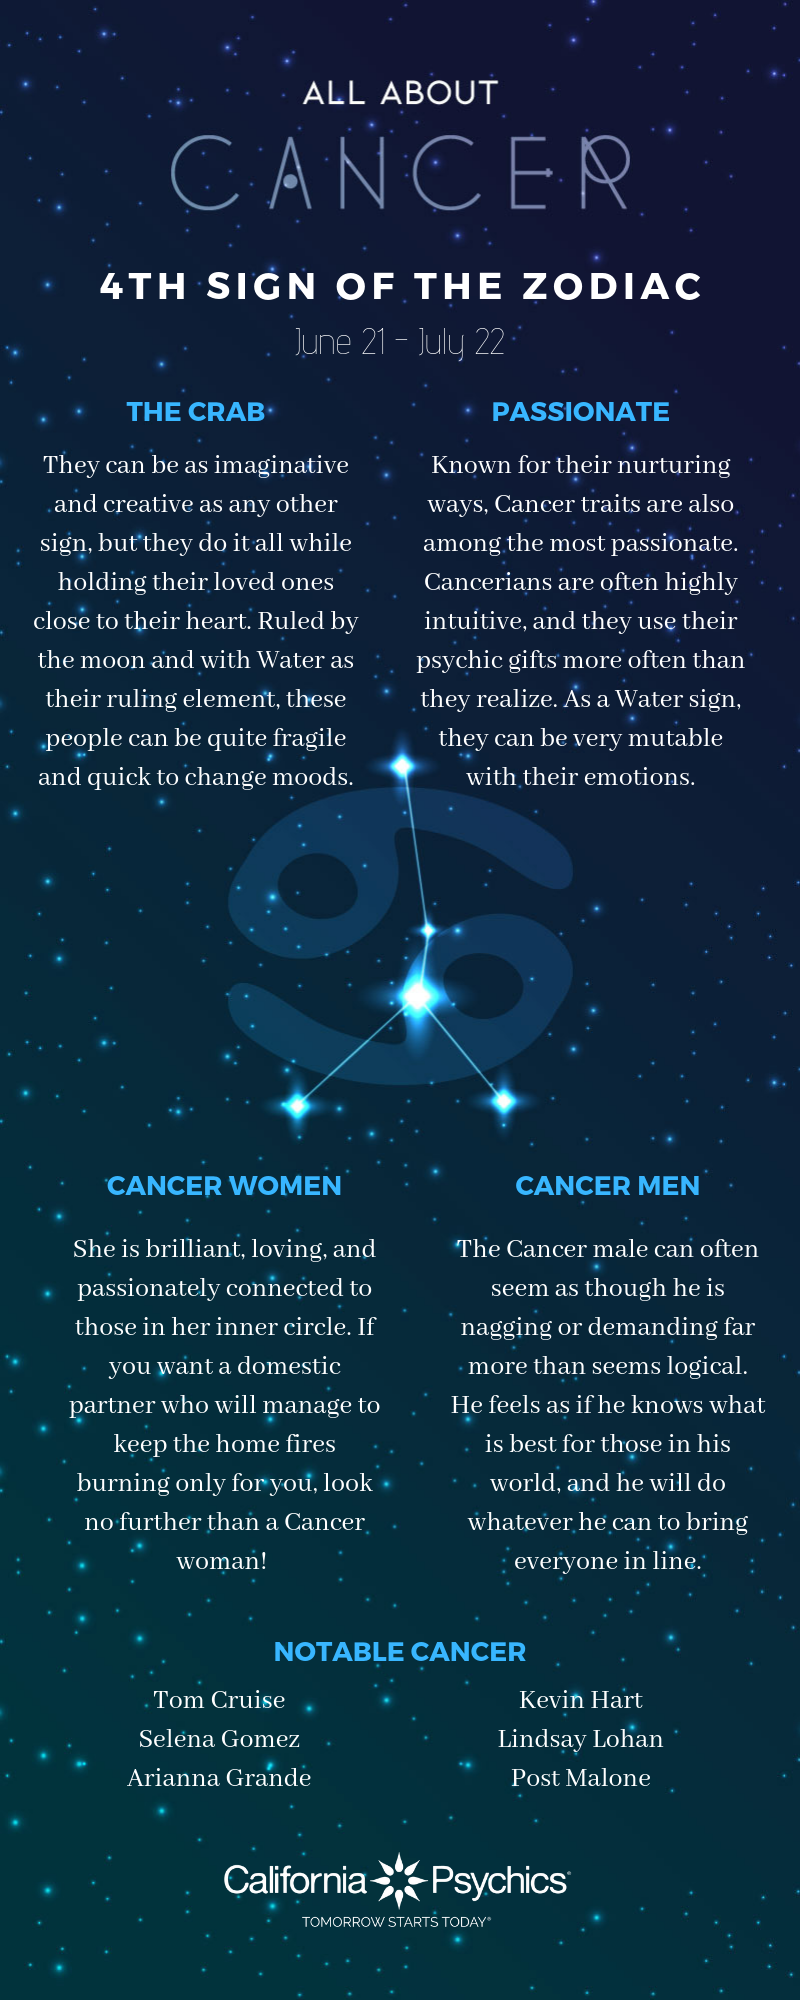 Quels sont les traits de personnalité d'un cancer?